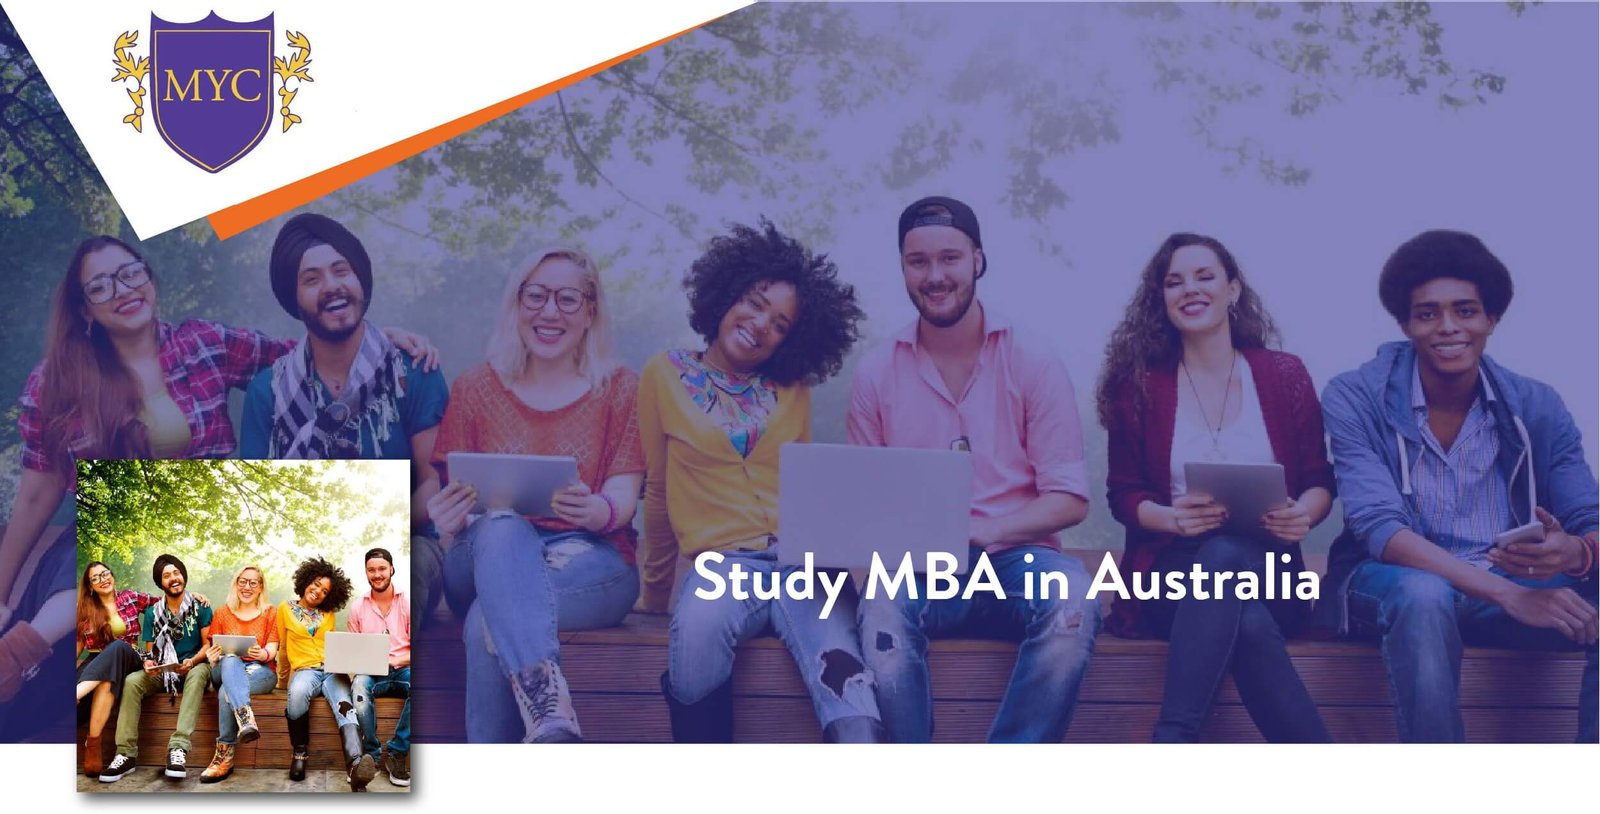 5 دلیل برای تحصیل در رشته MBA در استرالیا